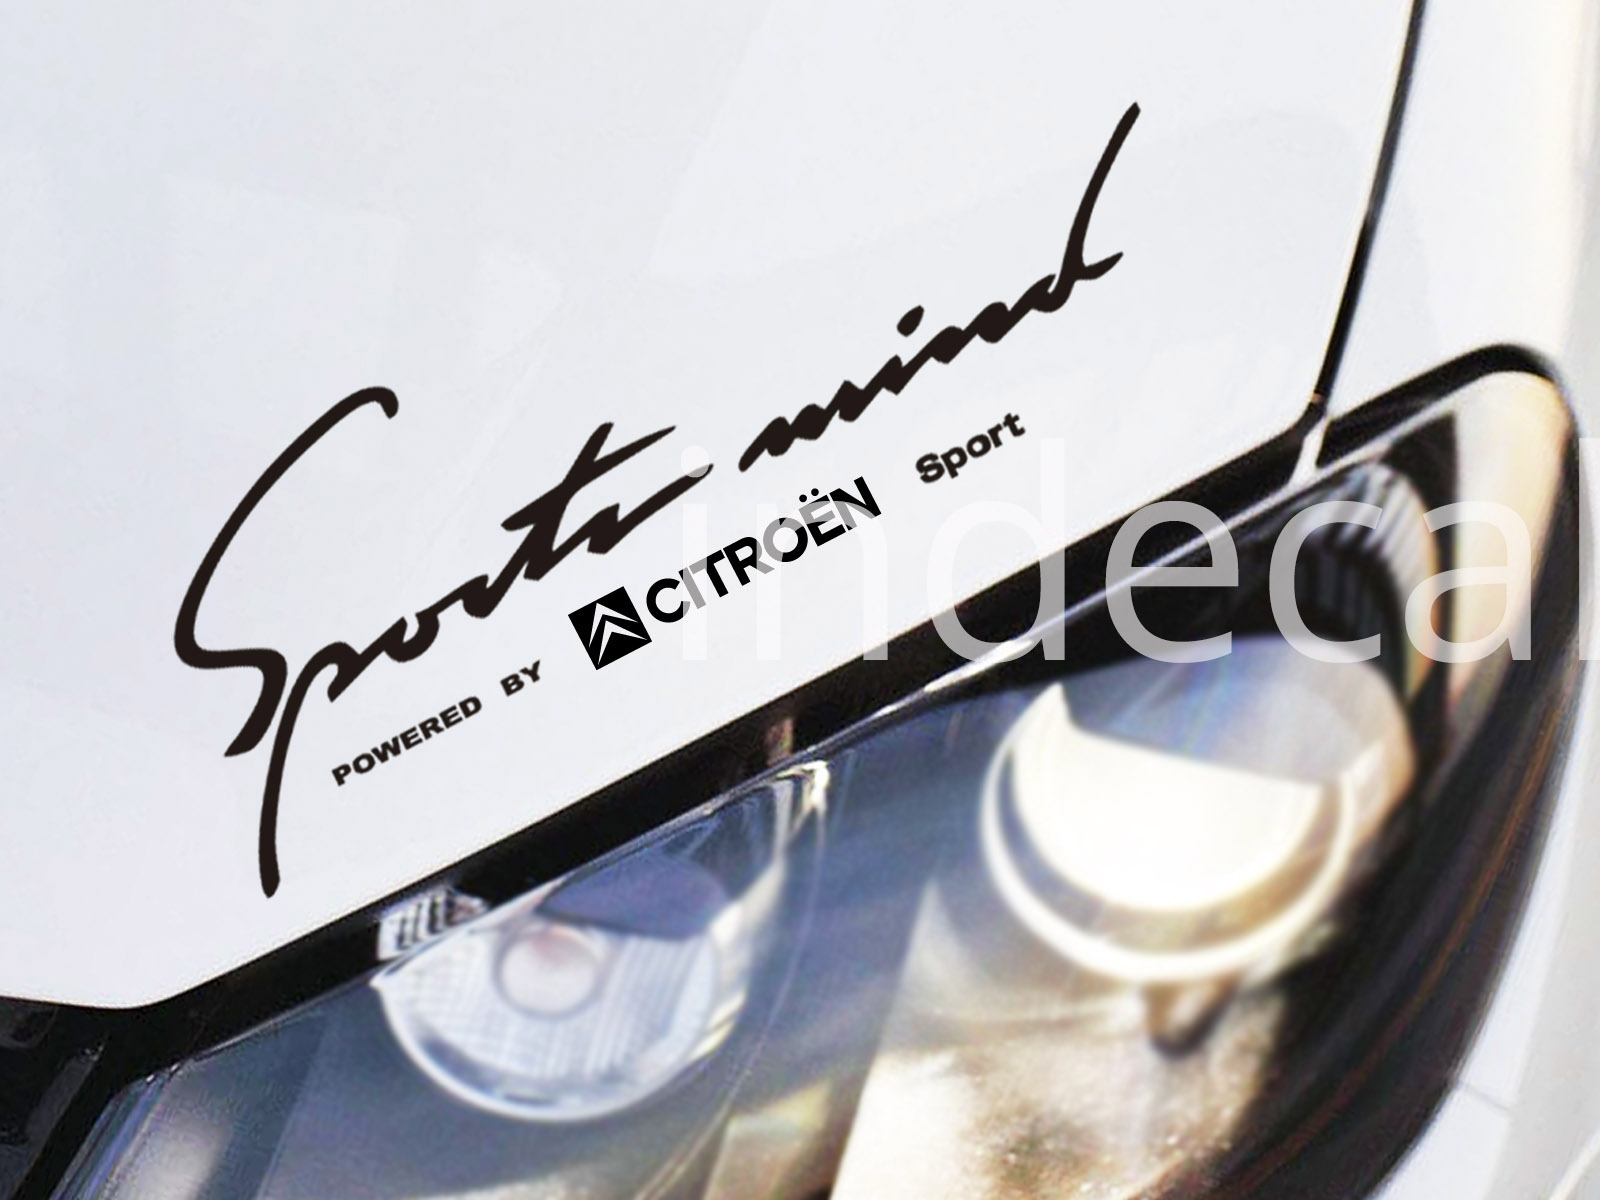 1 x Citroen Sports Mind Sticker - Black